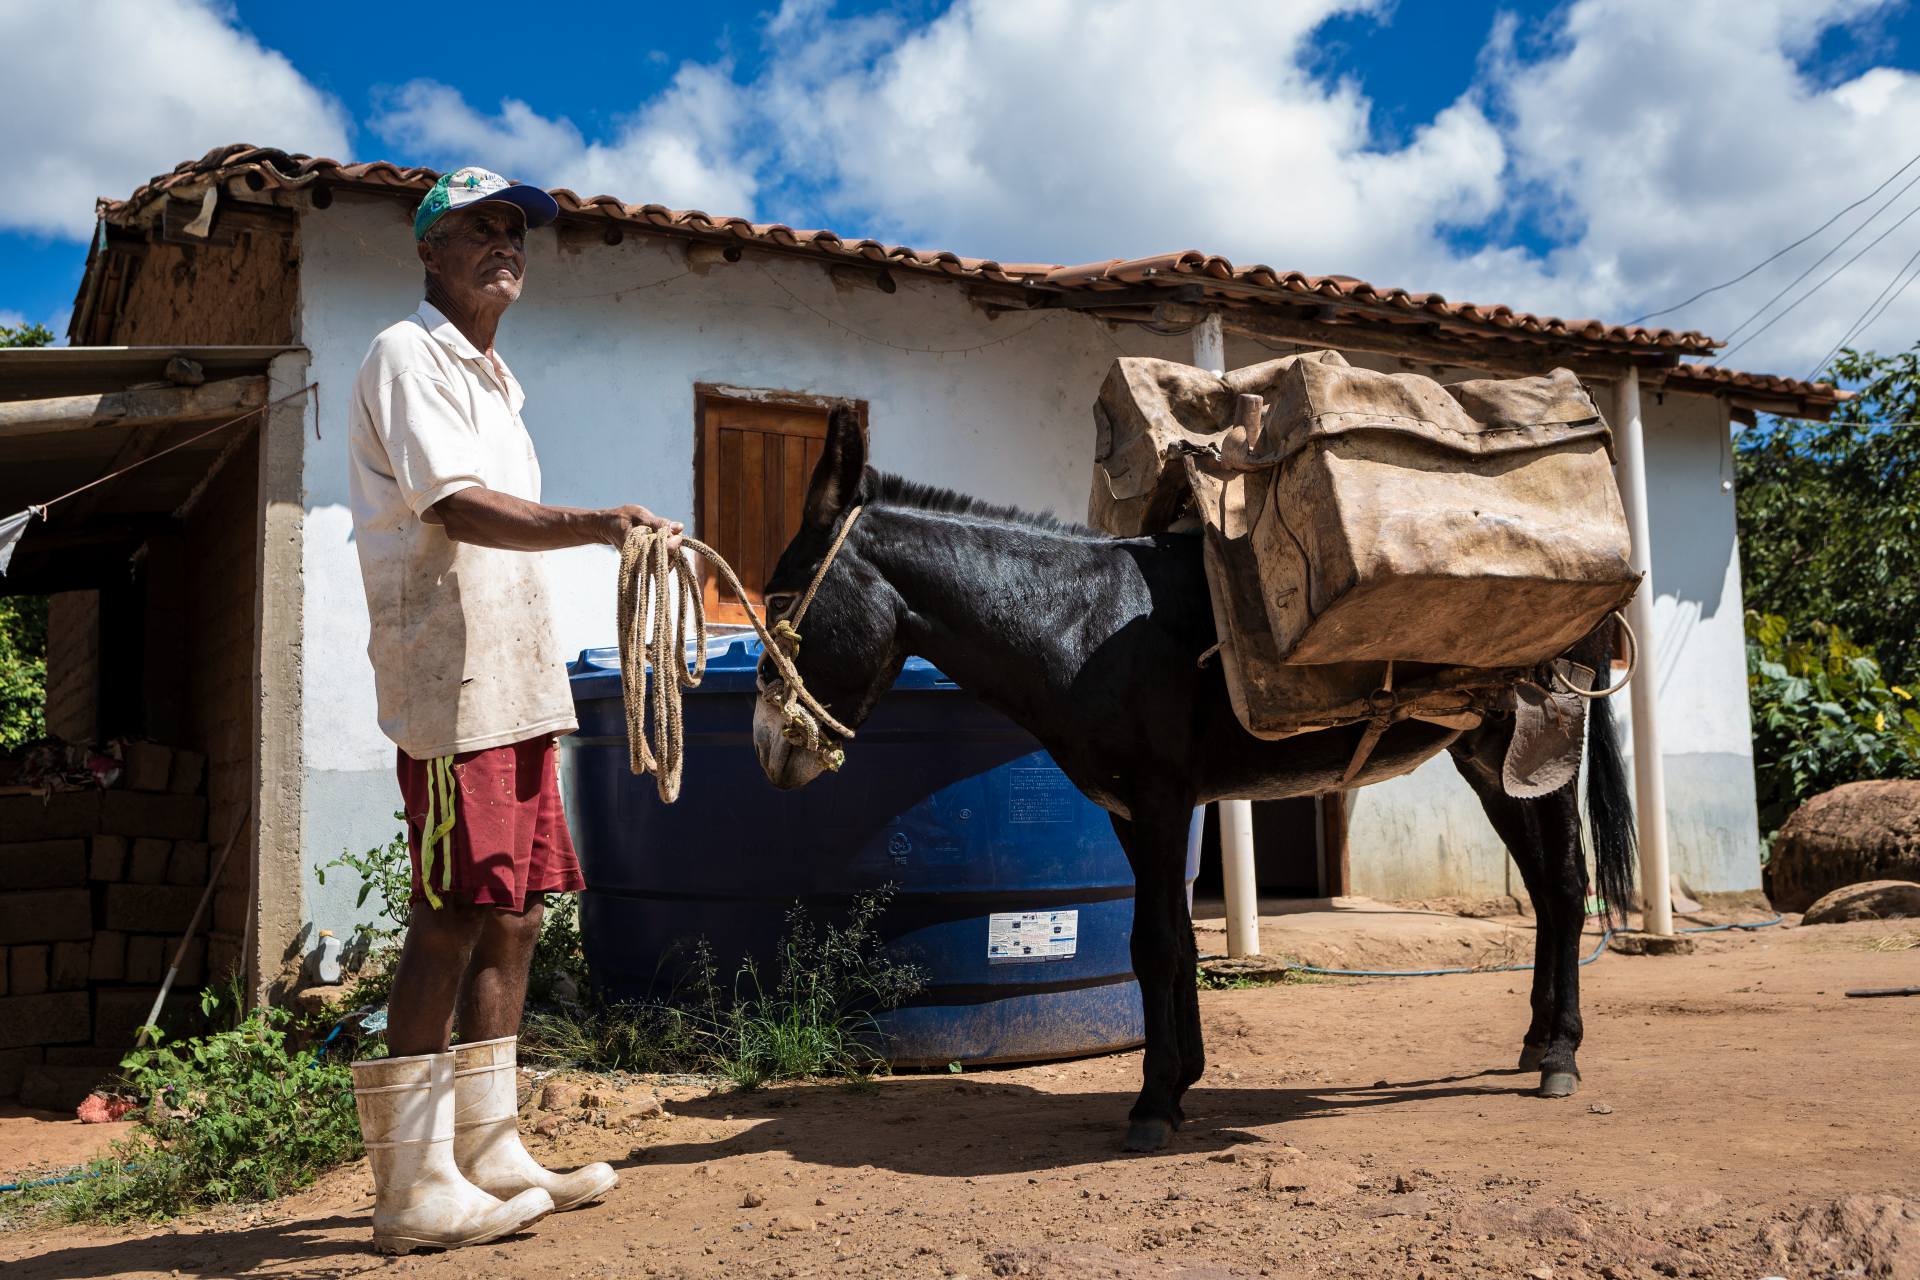 Um kein durch Erz verunreinigtes Wasser zu trinken, geht Bráulio Silva mit seinem Esel zu einer anderen Quelle, um sauberes Wasser zu holen. Foto: Fernando Martinho